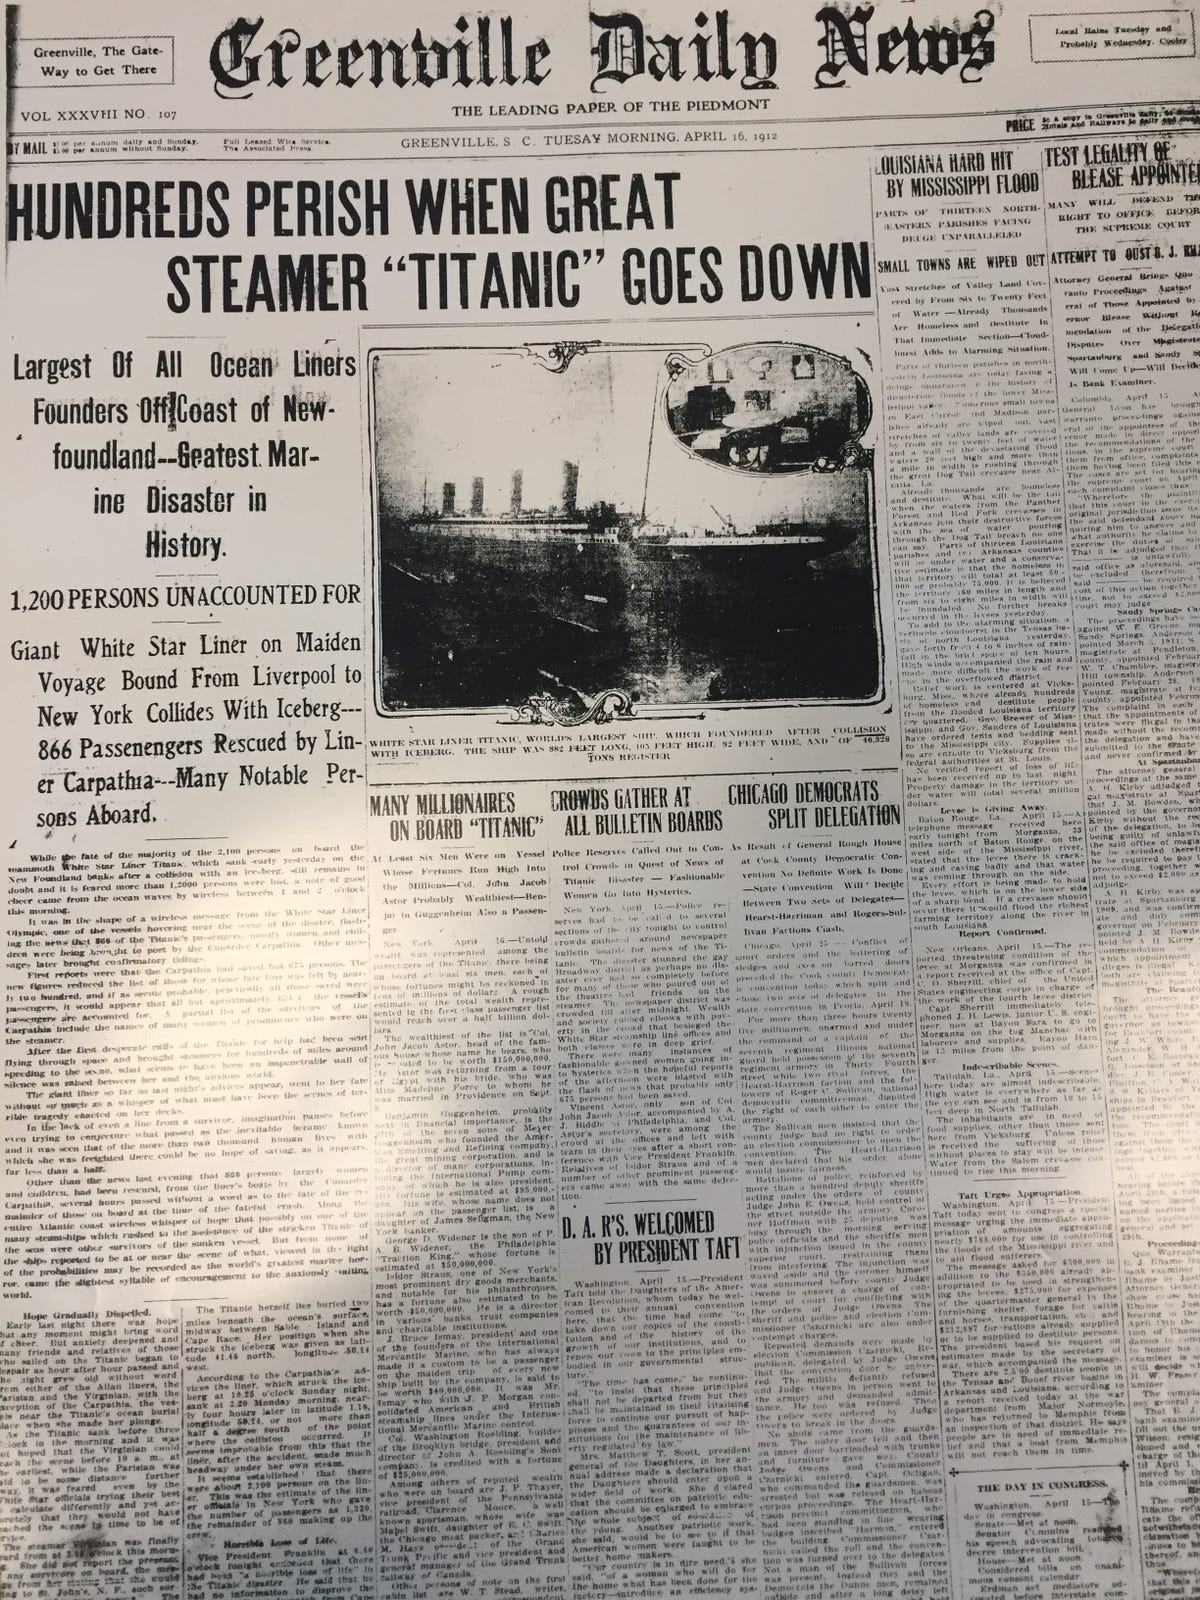 Men Women Children Die When Titanic Sinks In 1912